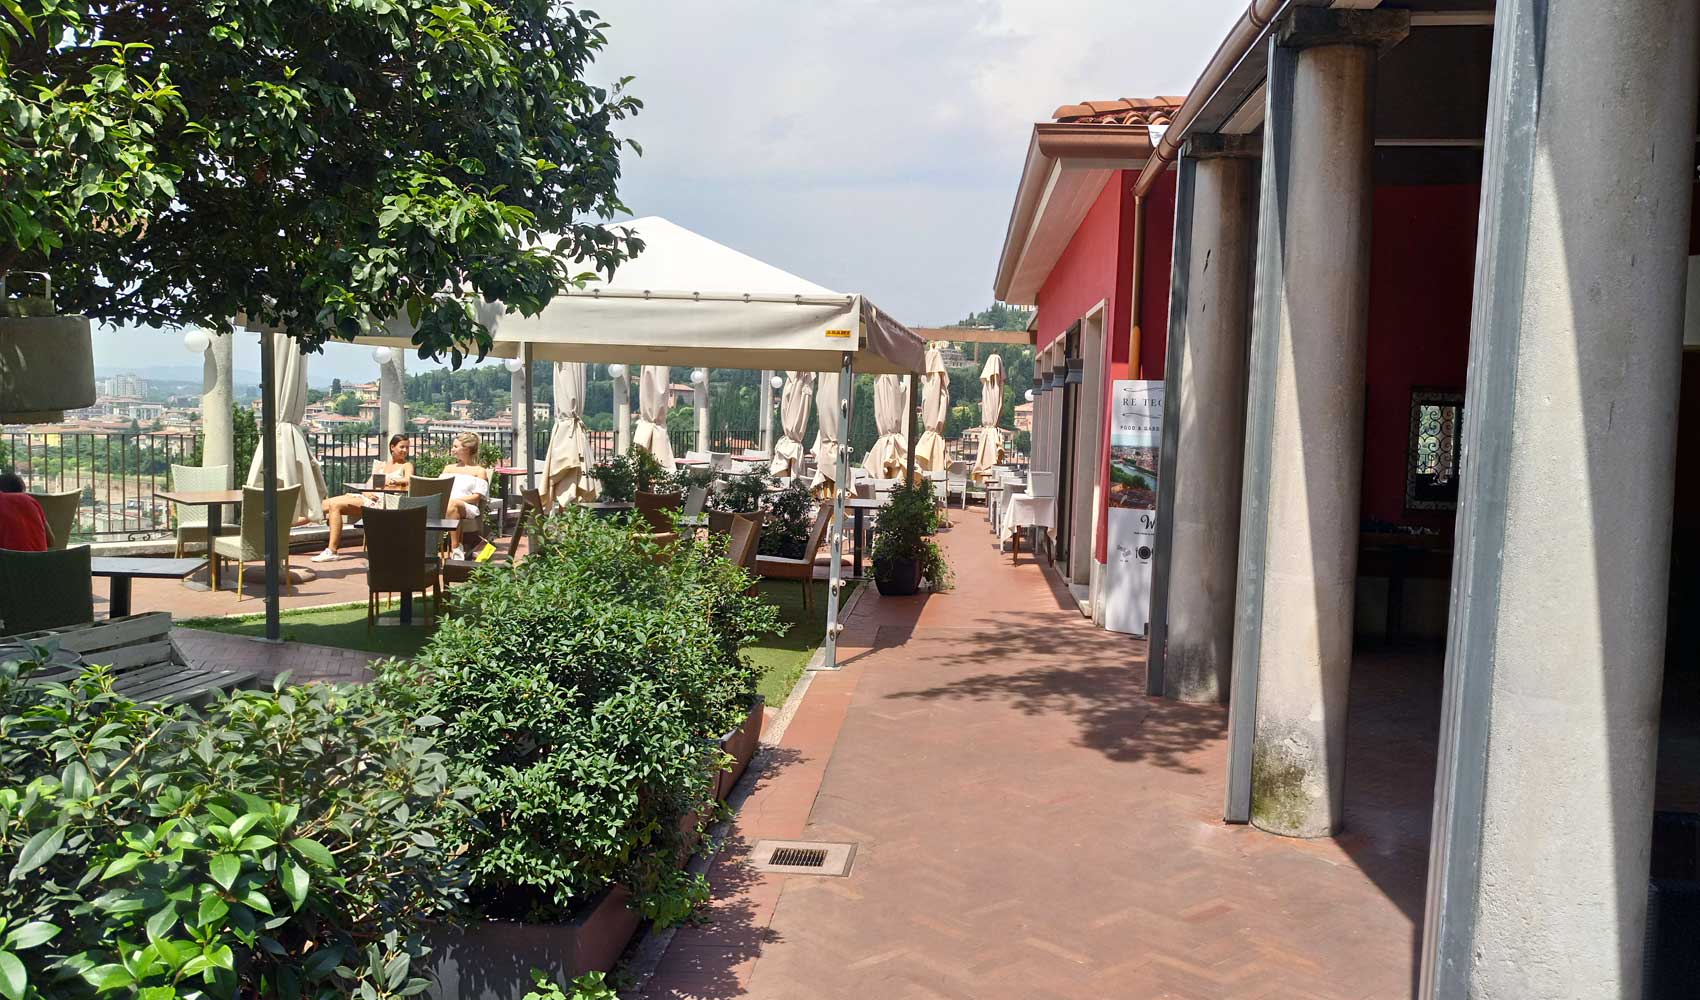 Das Restaurant Re Teodorico an der Burg San Pietro von Verona.